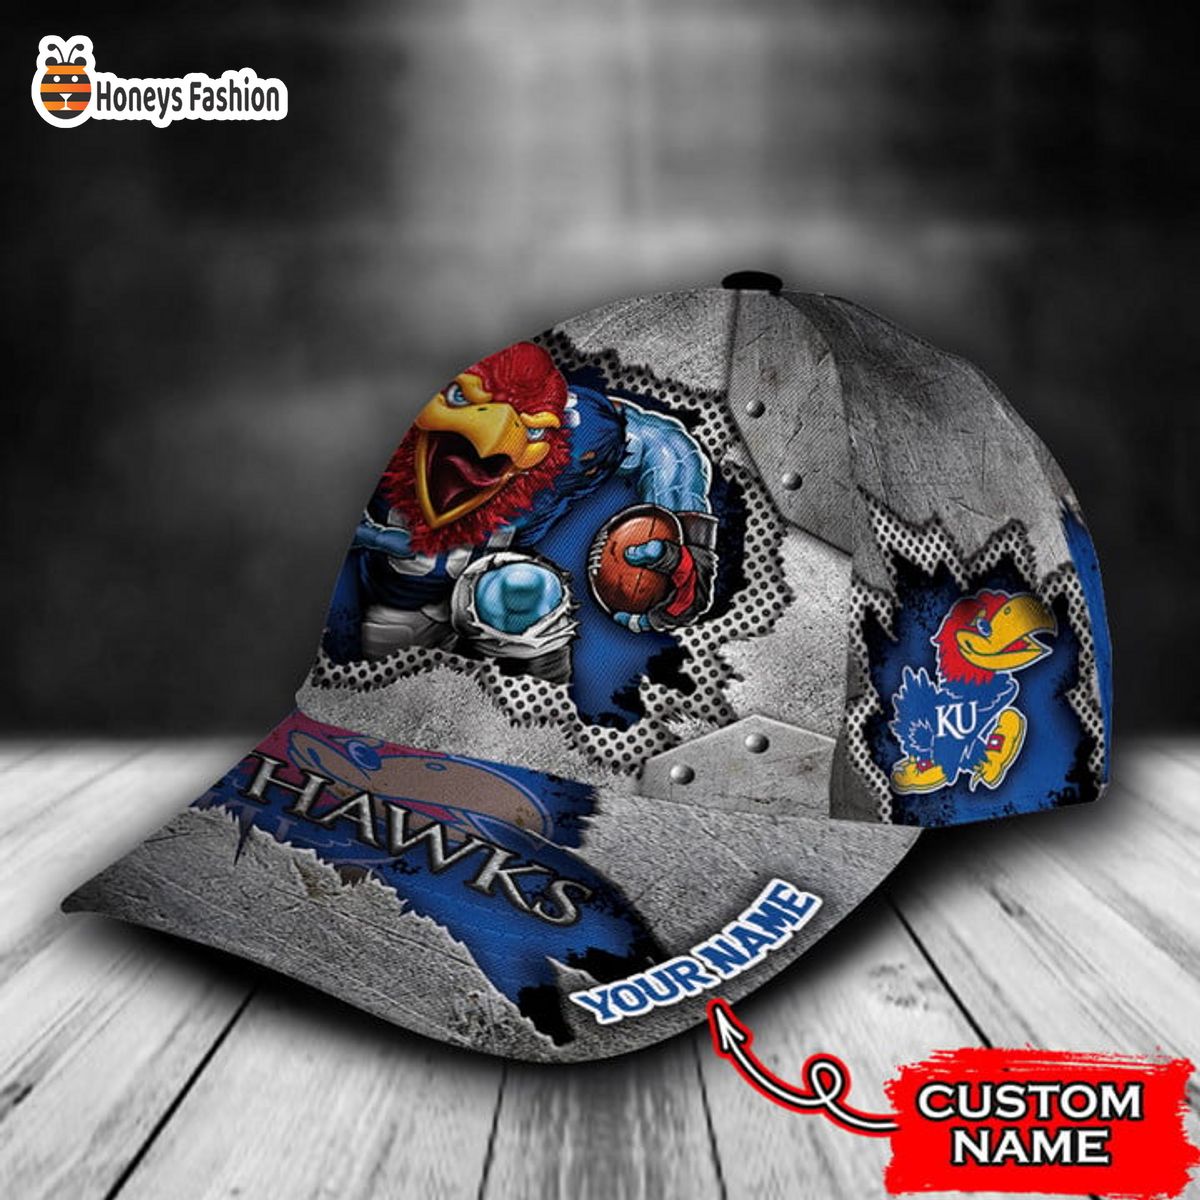 Kansas Jayhawks mascot custom name classic cap